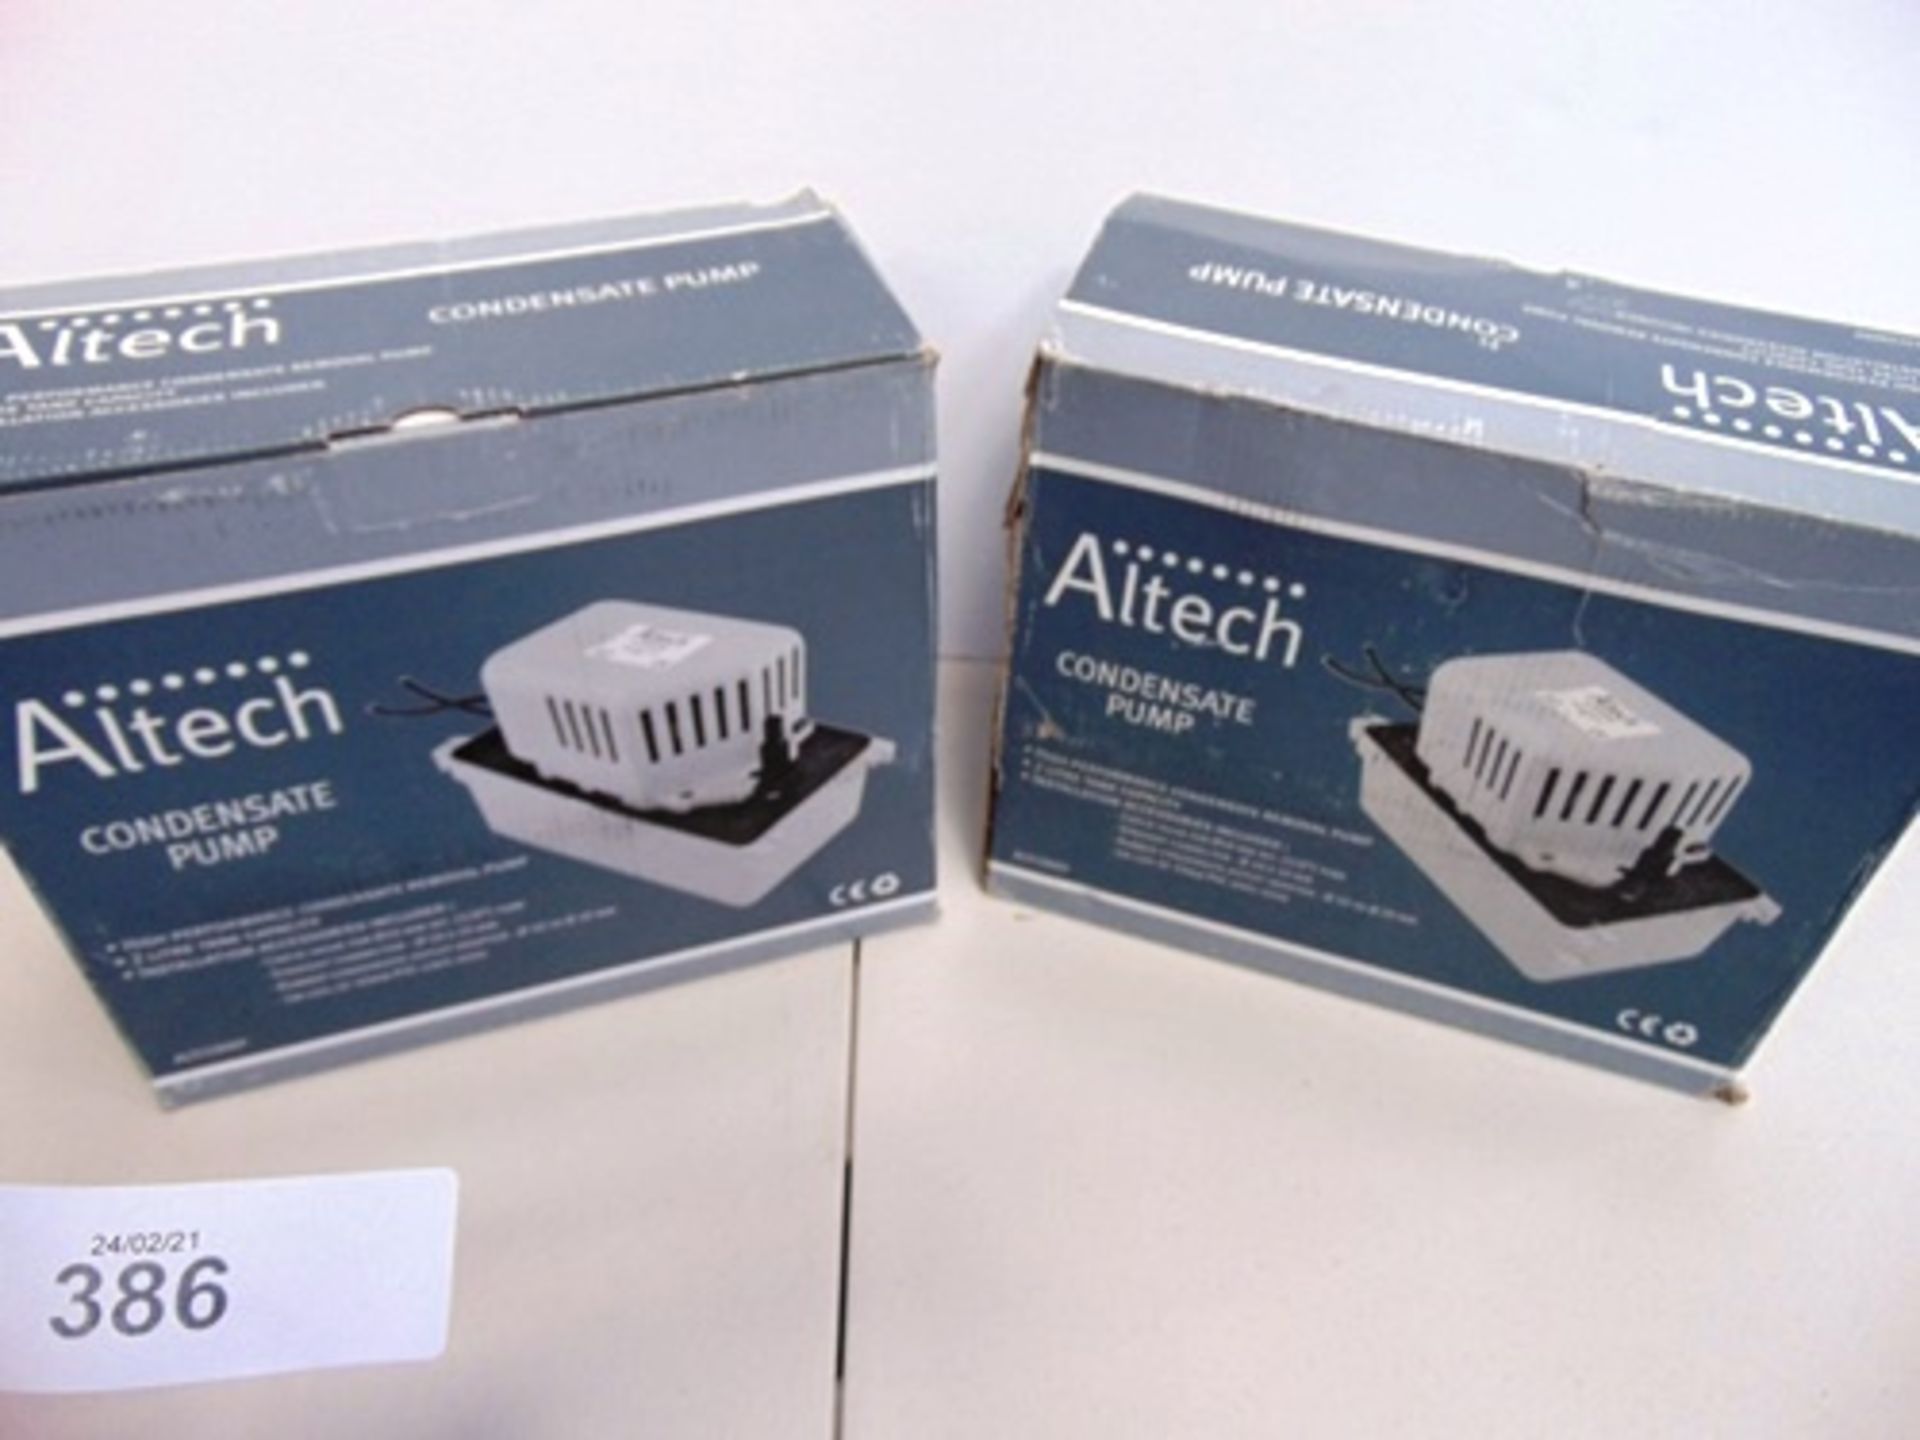 2 x Altech condensate pump, model Altconrp - New in box (GS25)